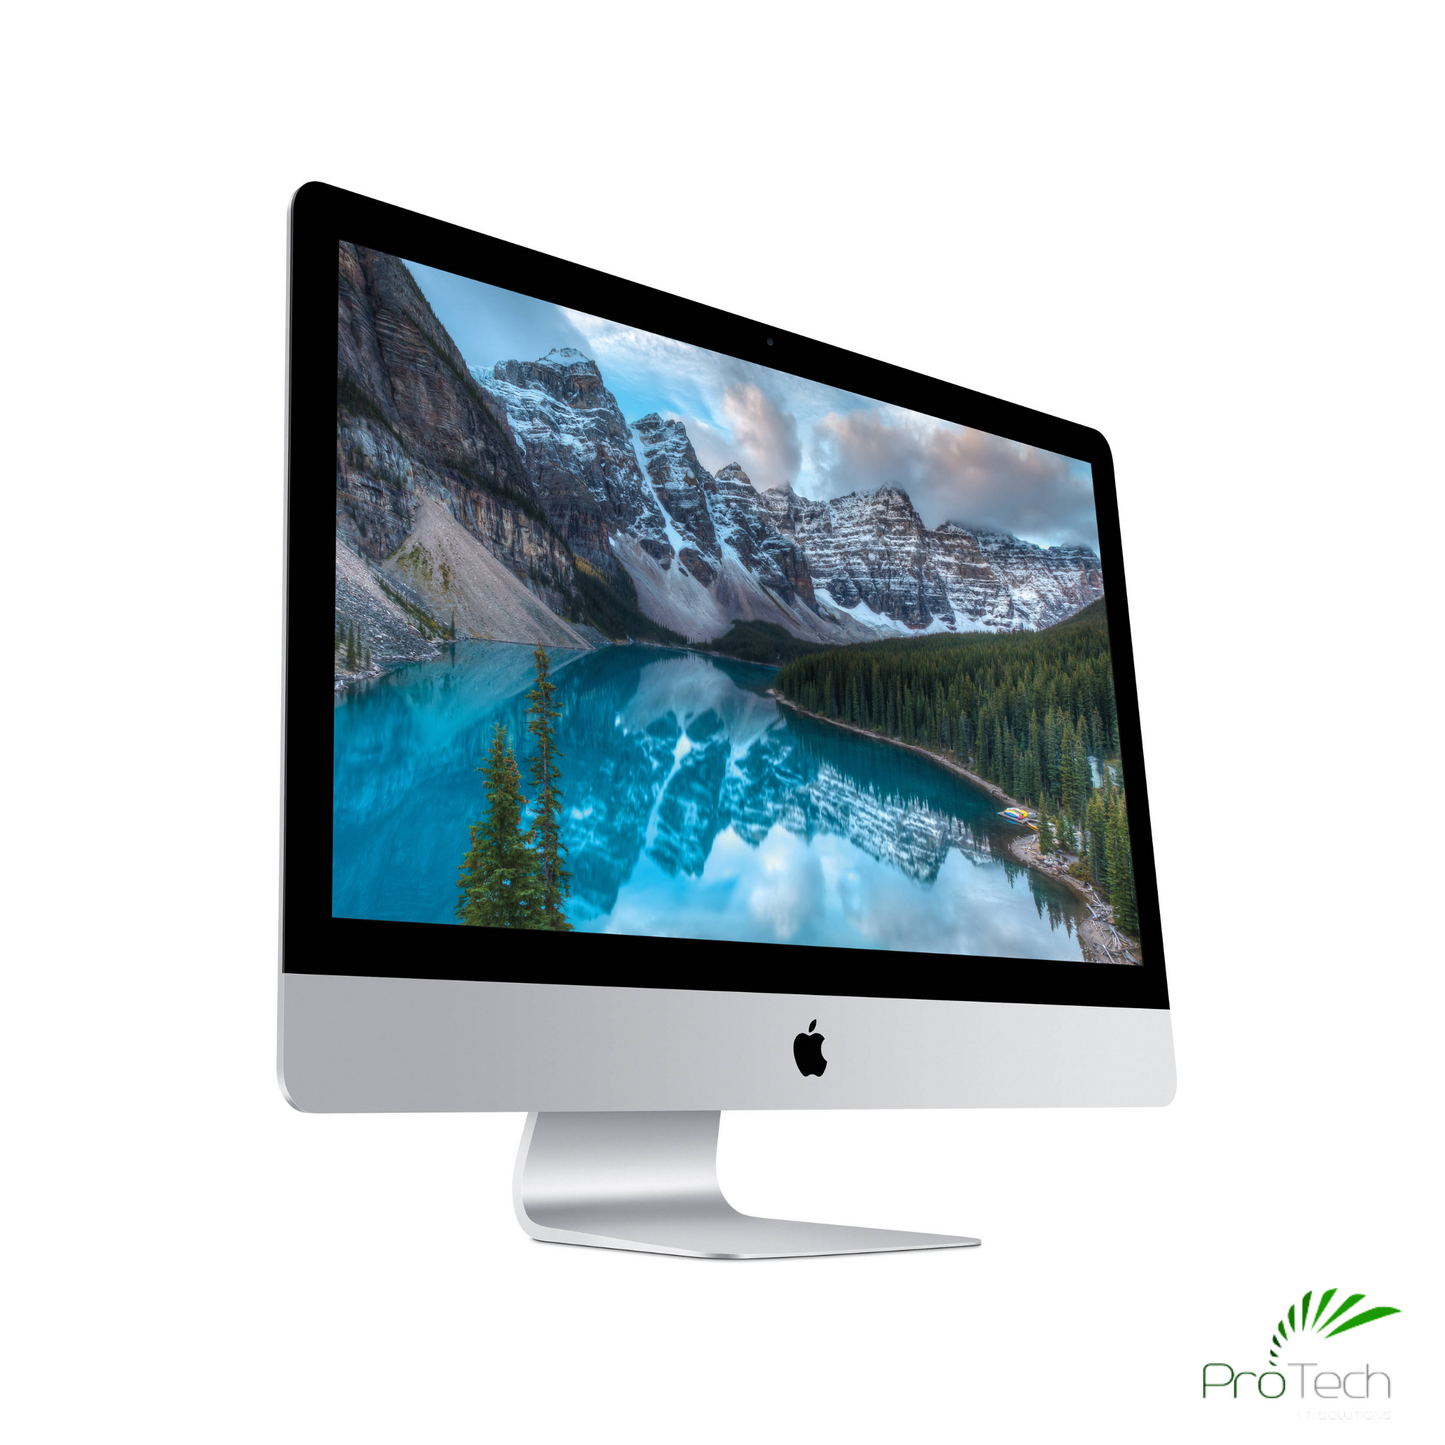 Apple iMac 27” Retina 5K (2015) | Core i5 | 16GB RAM | 1TB HDD | Radeon R9 GPU